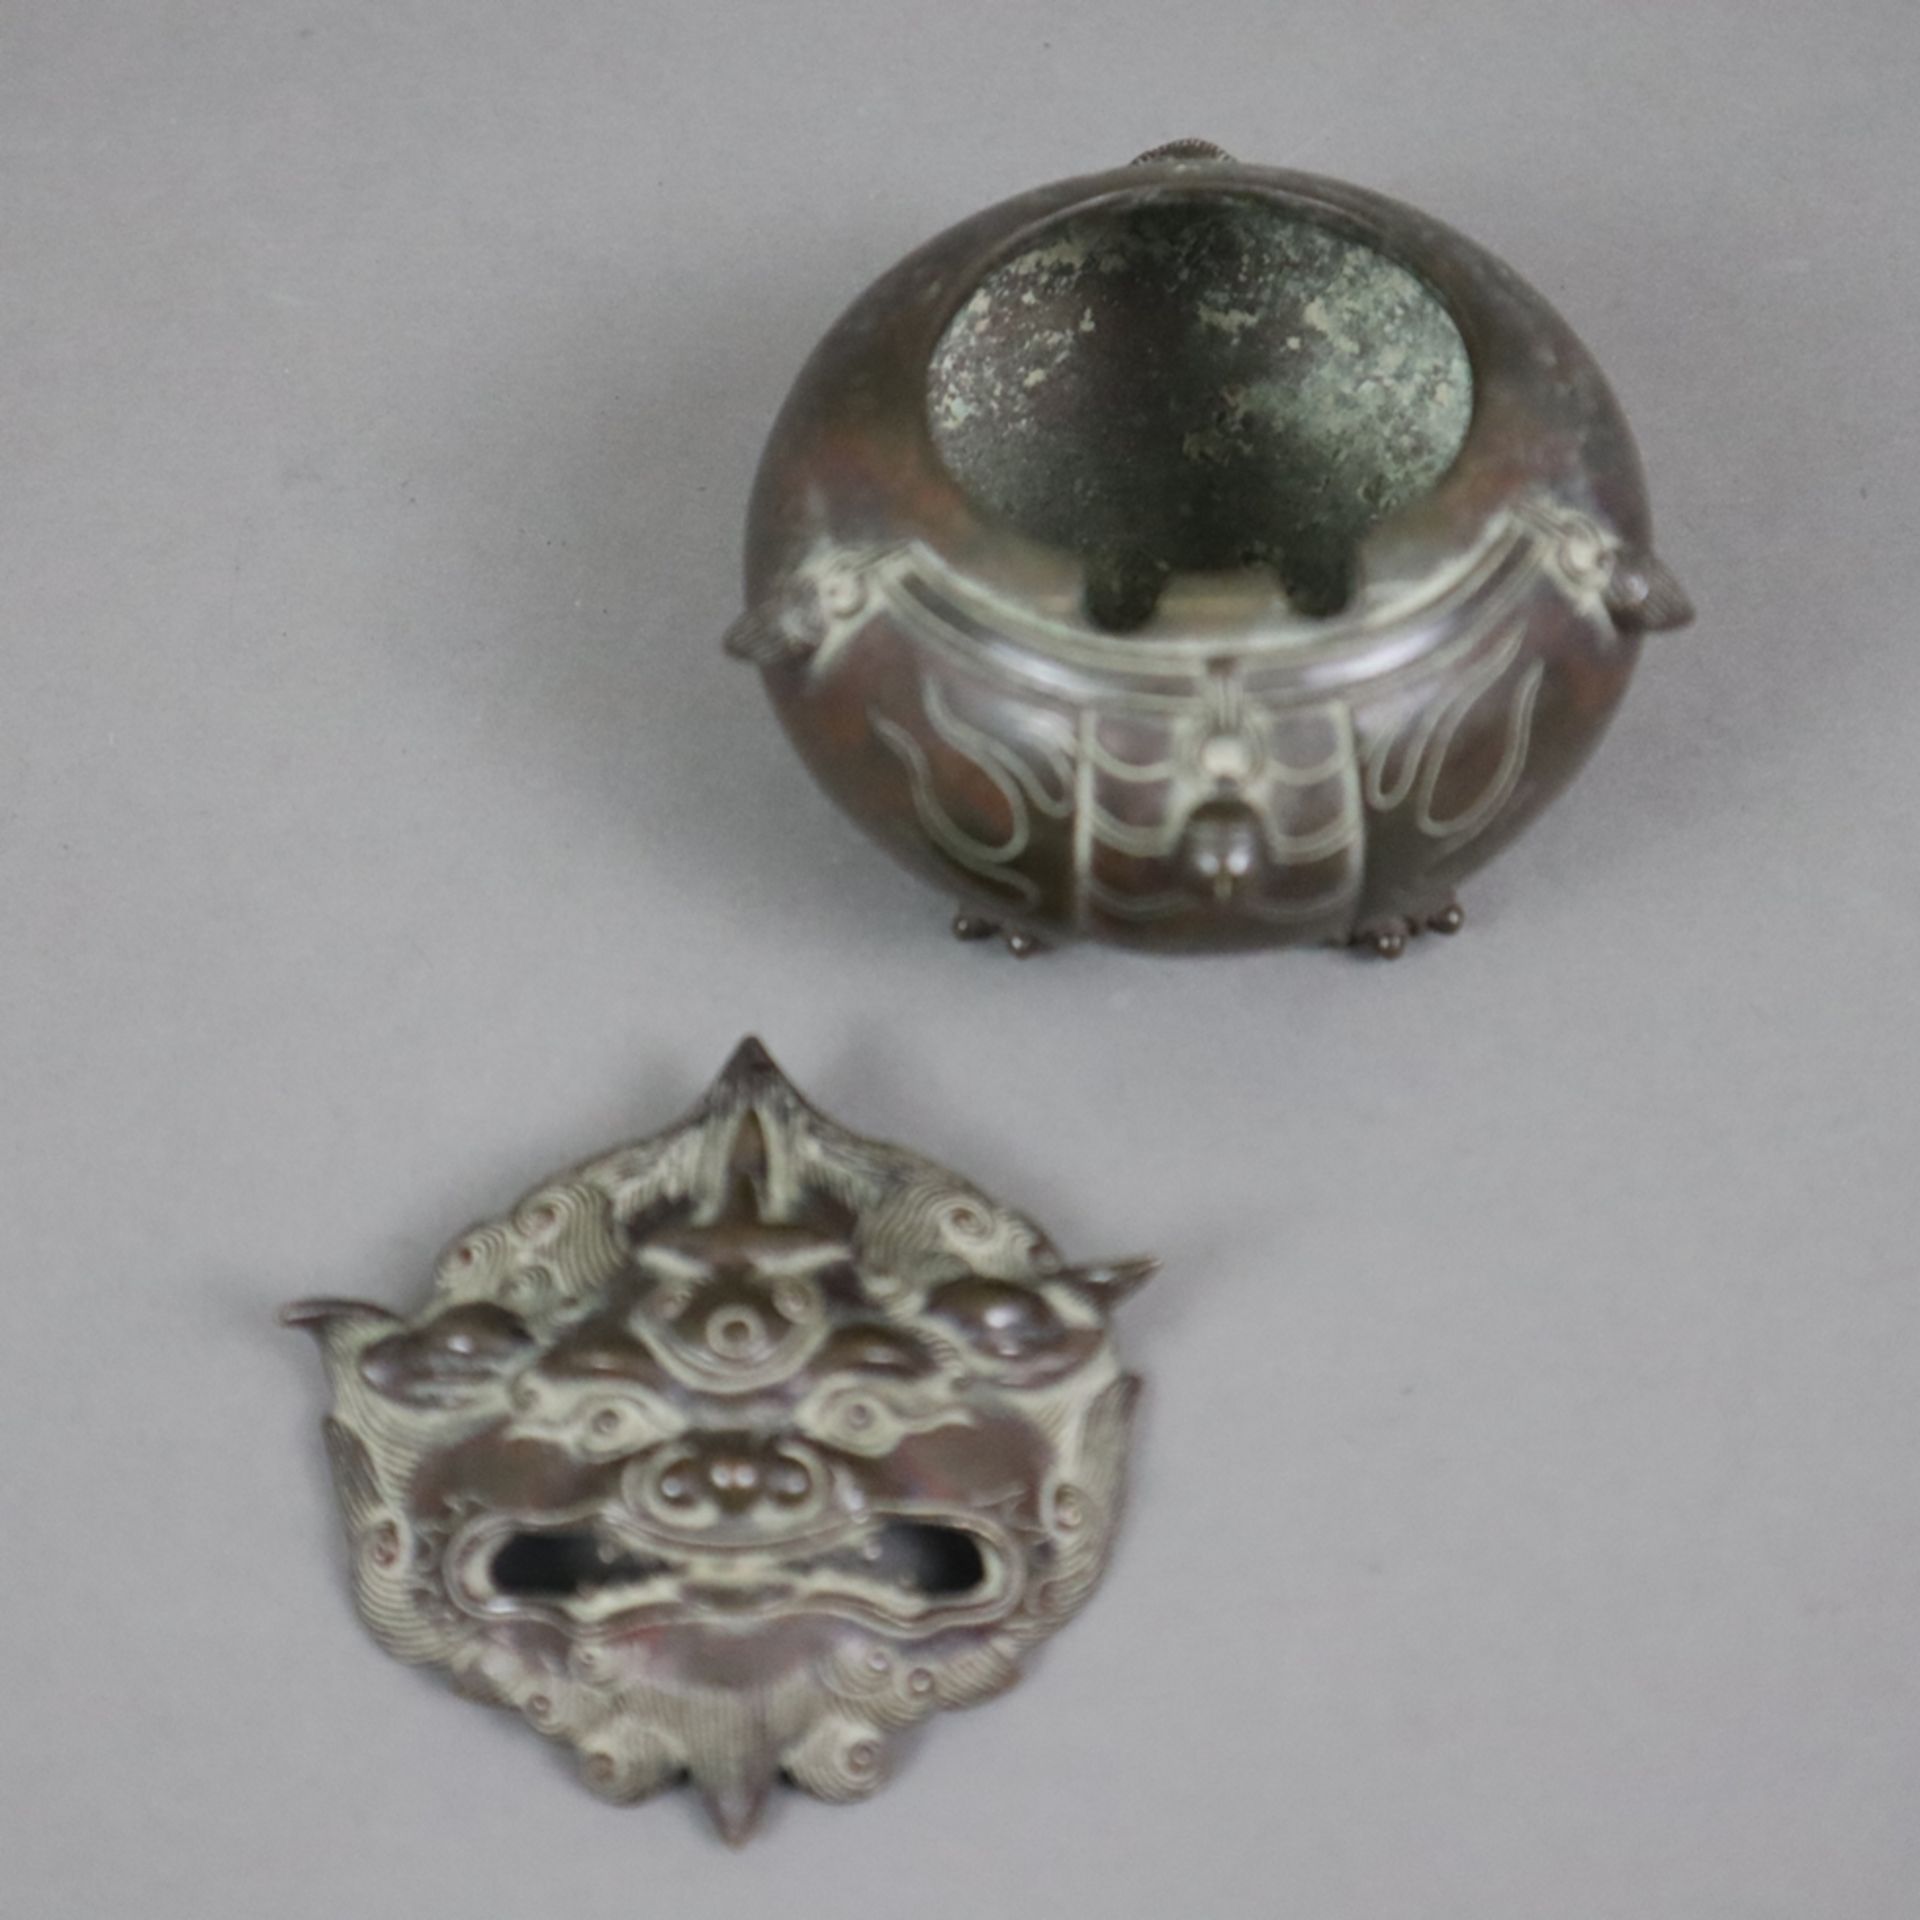 Kleiner figürlicher Koro - Japan, Bronze, braun patiniert, in Gestalt eines runden Shishi, Steckdec - Bild 3 aus 6